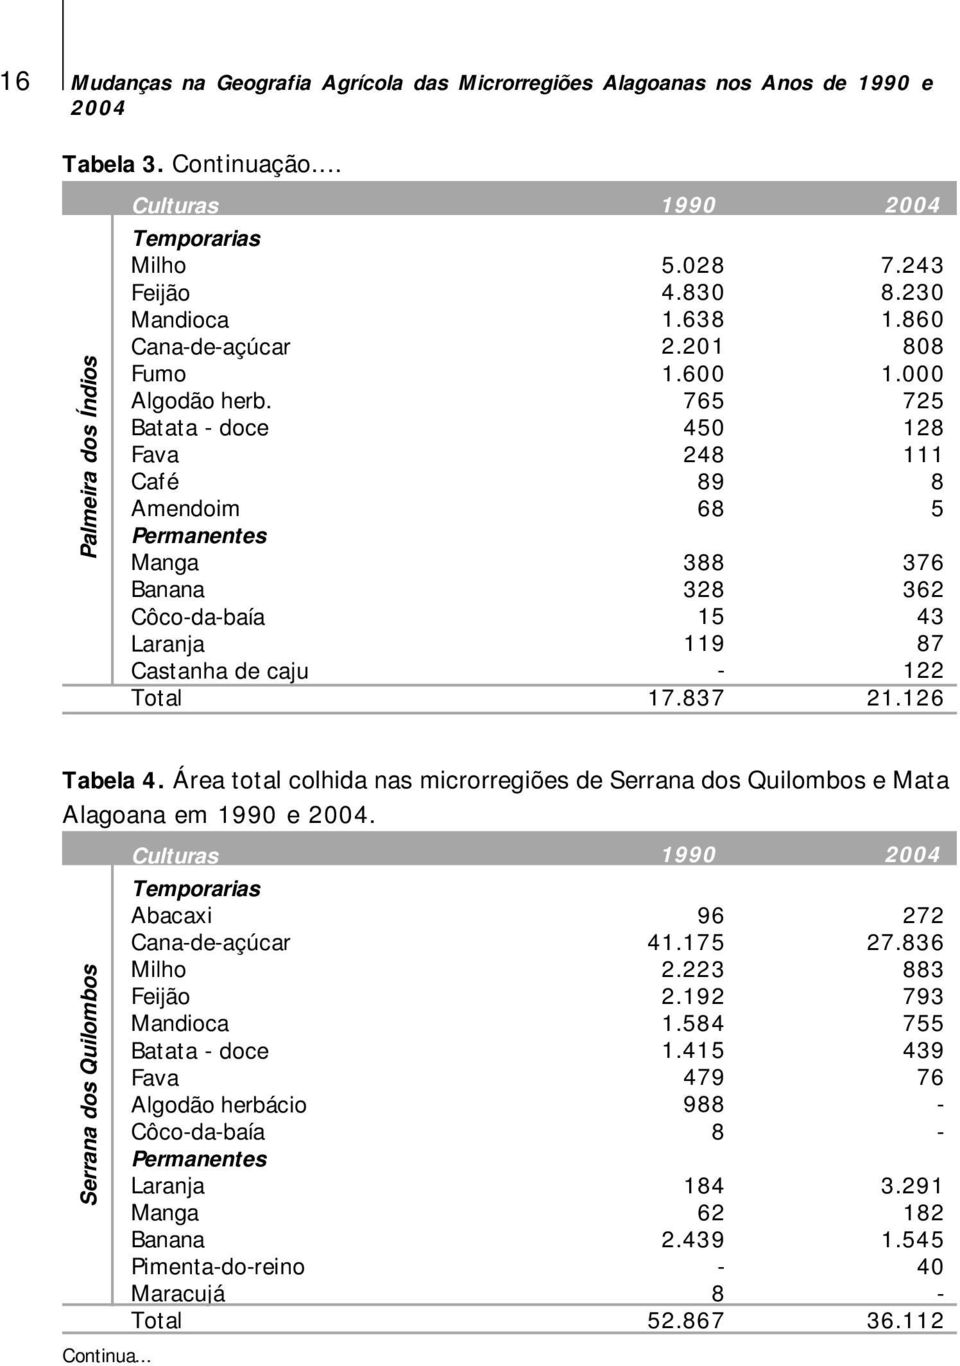 000 725 128 111 8 5 376 362 43 87 122 21.126 Tabela 4. Área total colhida nas microrregiões de Serrana dos Quilombos e Mata Alagoana em 1990 e.